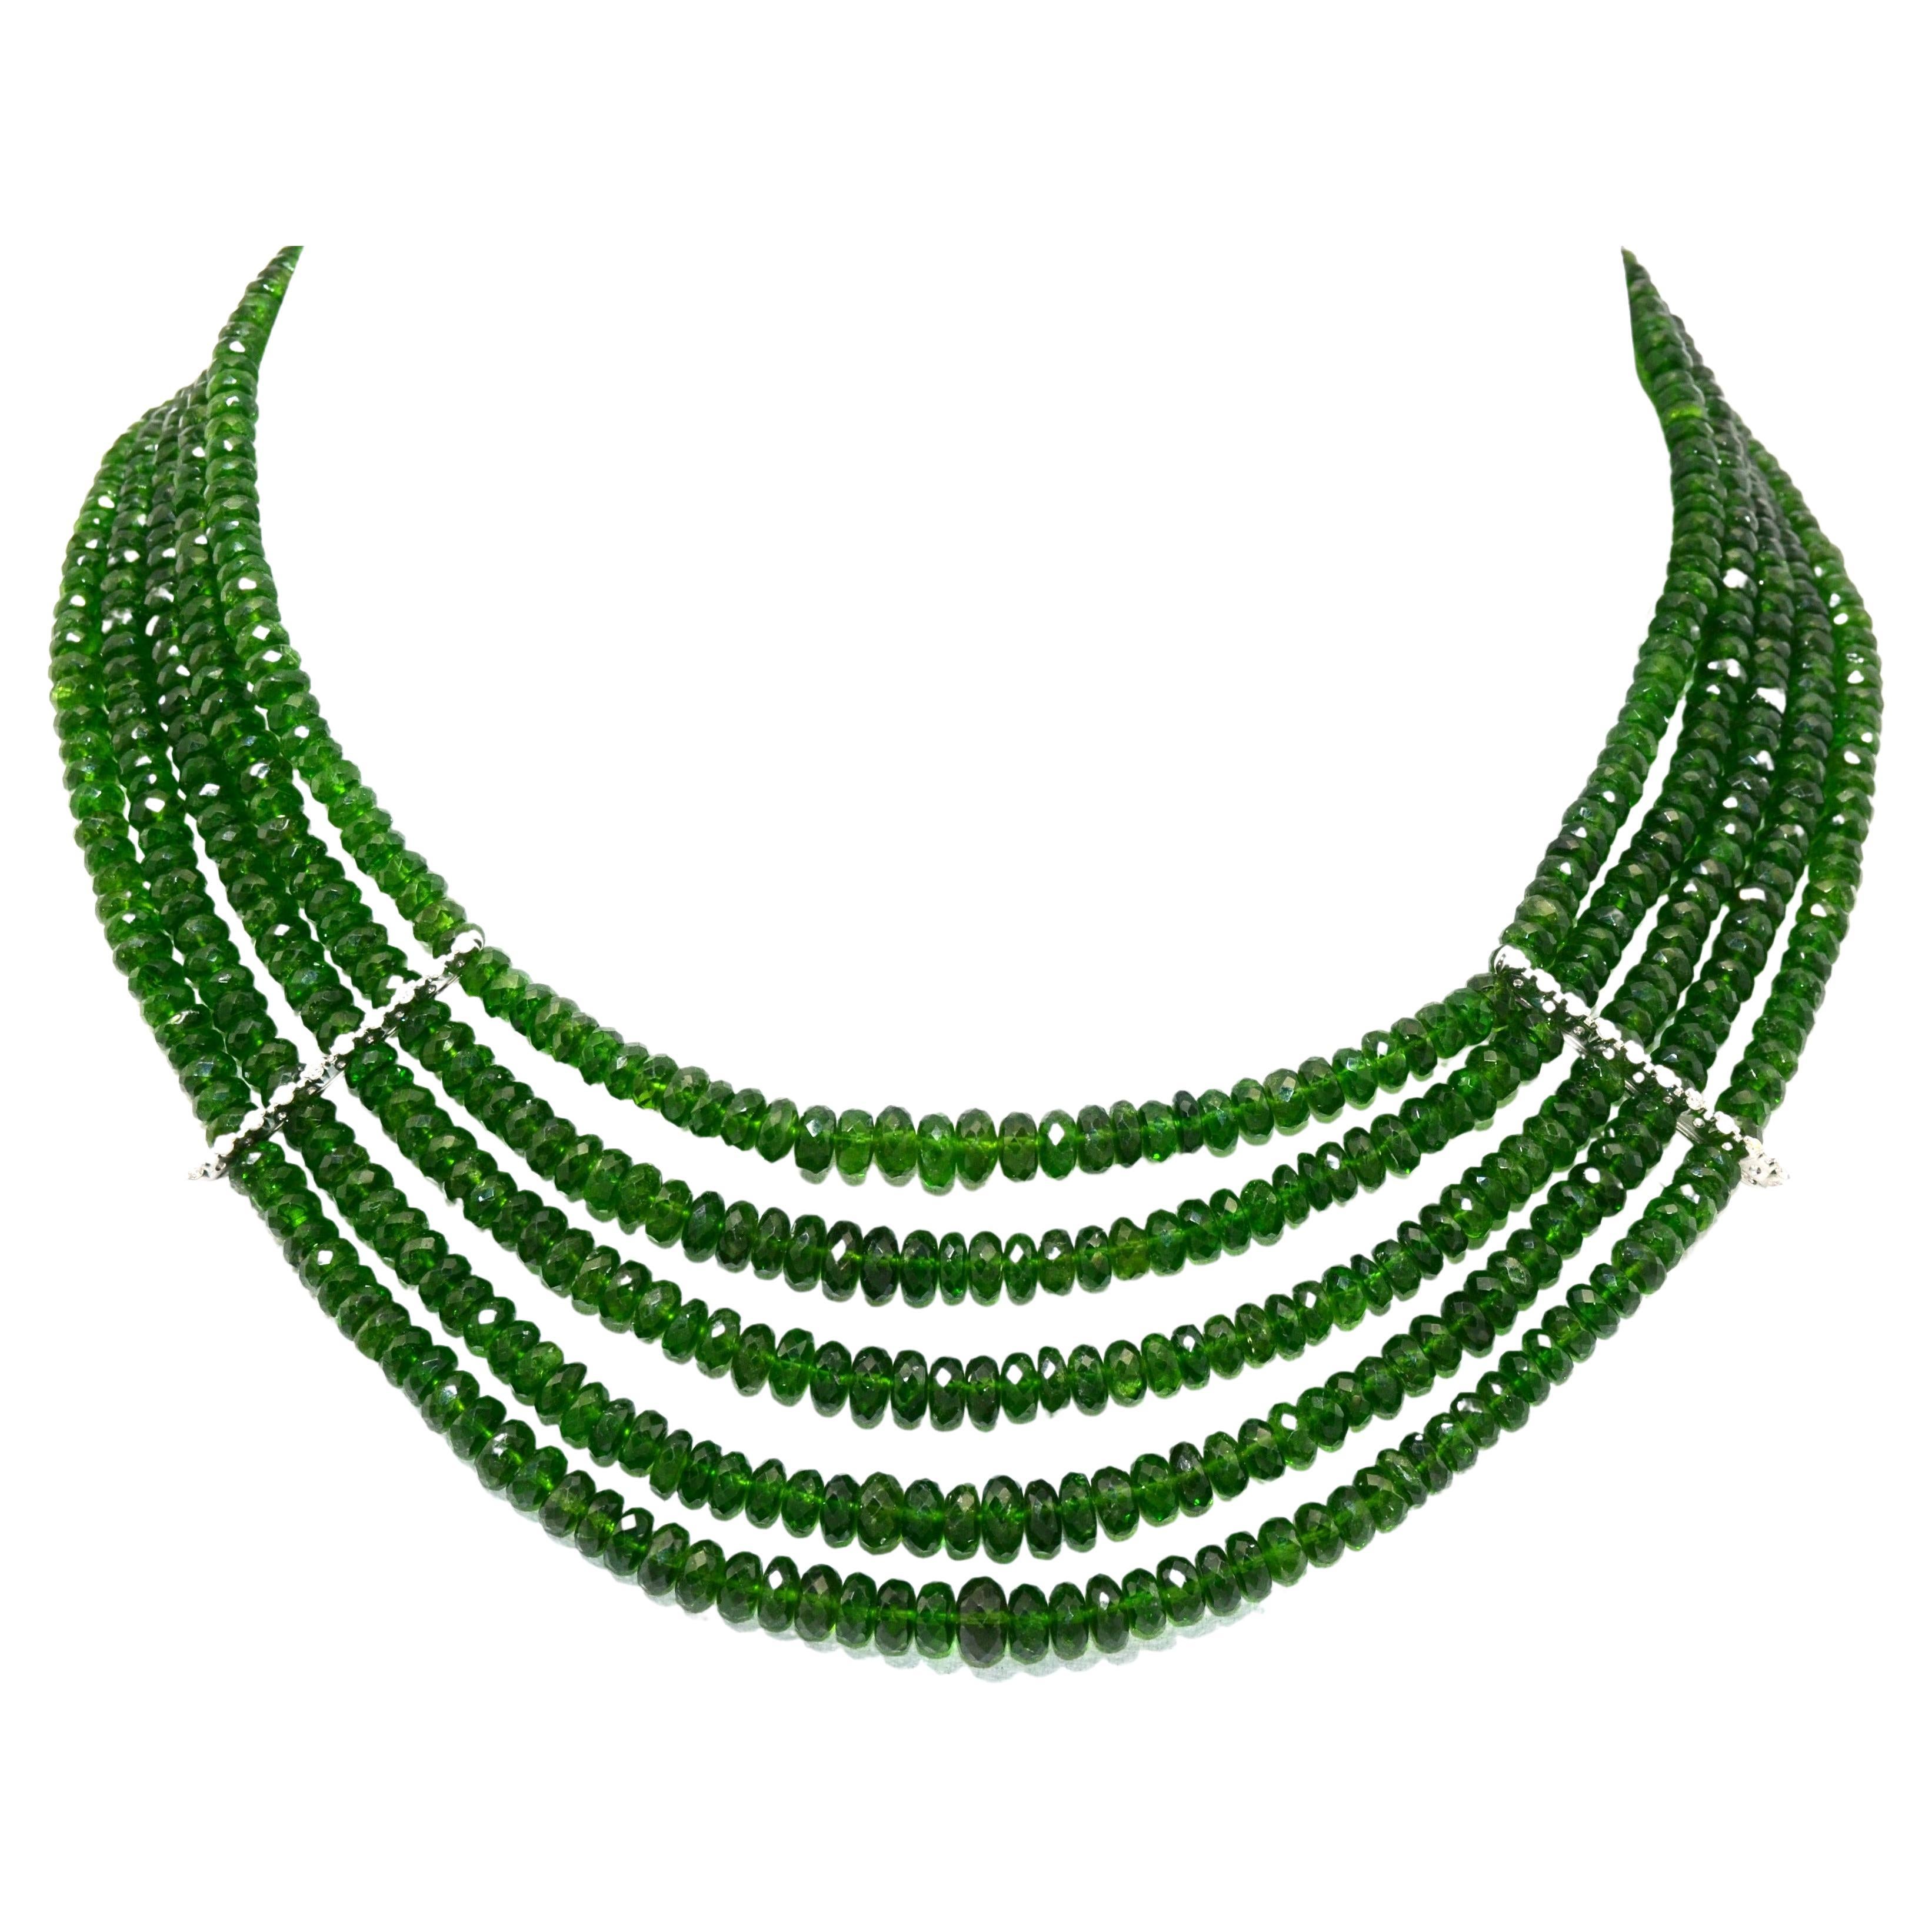 Collier étincelant de tourmalines vertes vives naturelles, composé de 5 rangs de perles rondes dégradées facettées.
Détaillé par une ligne de diamants, sertis sur de l'or blanc, un de chaque côté du collier.
Fermoir de même style orné de diamants et